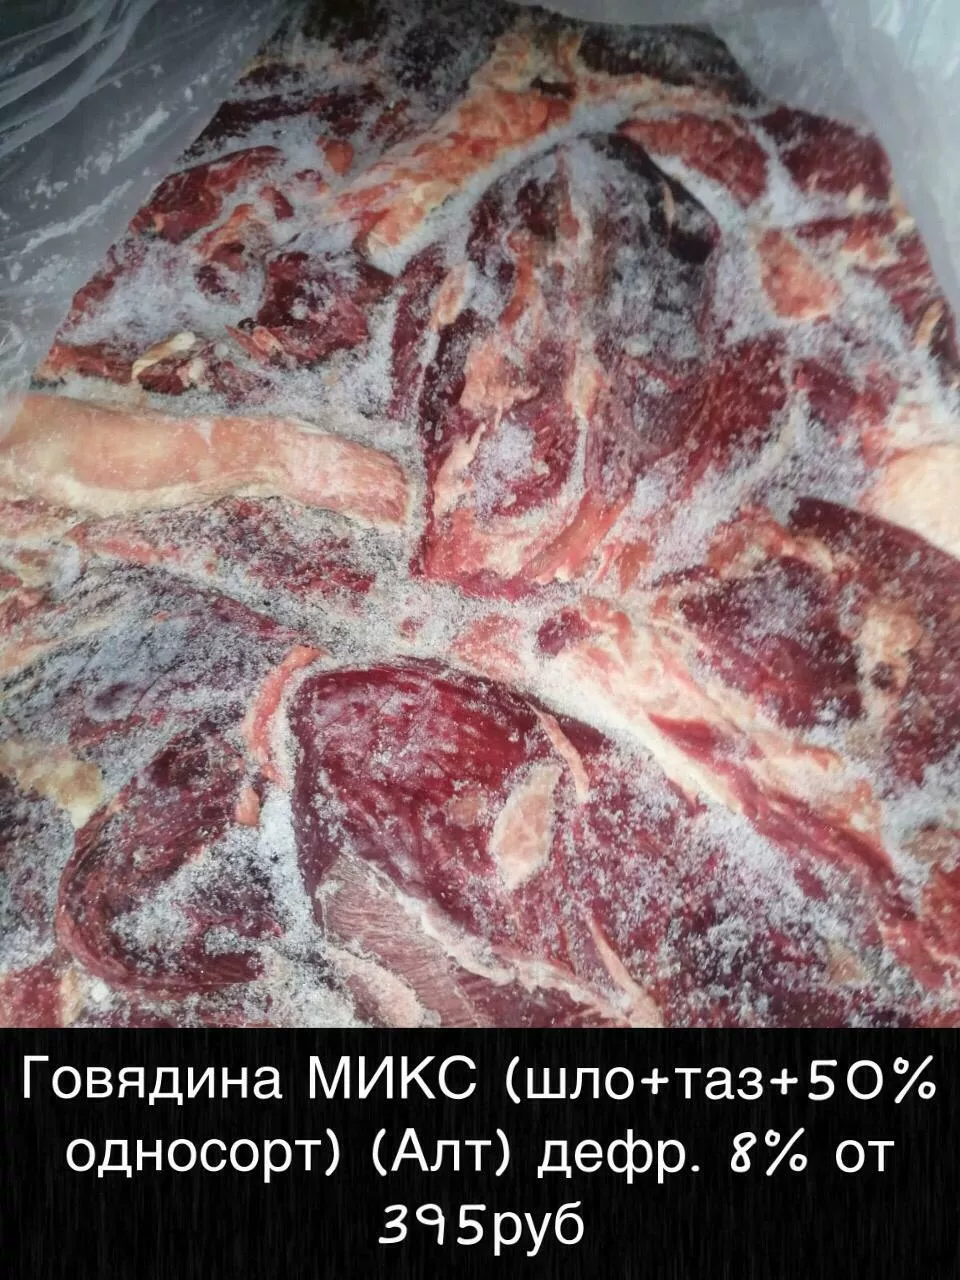 мясо оптом доставка красноярск бесплатно в Красноярске и Красноярском крае 3